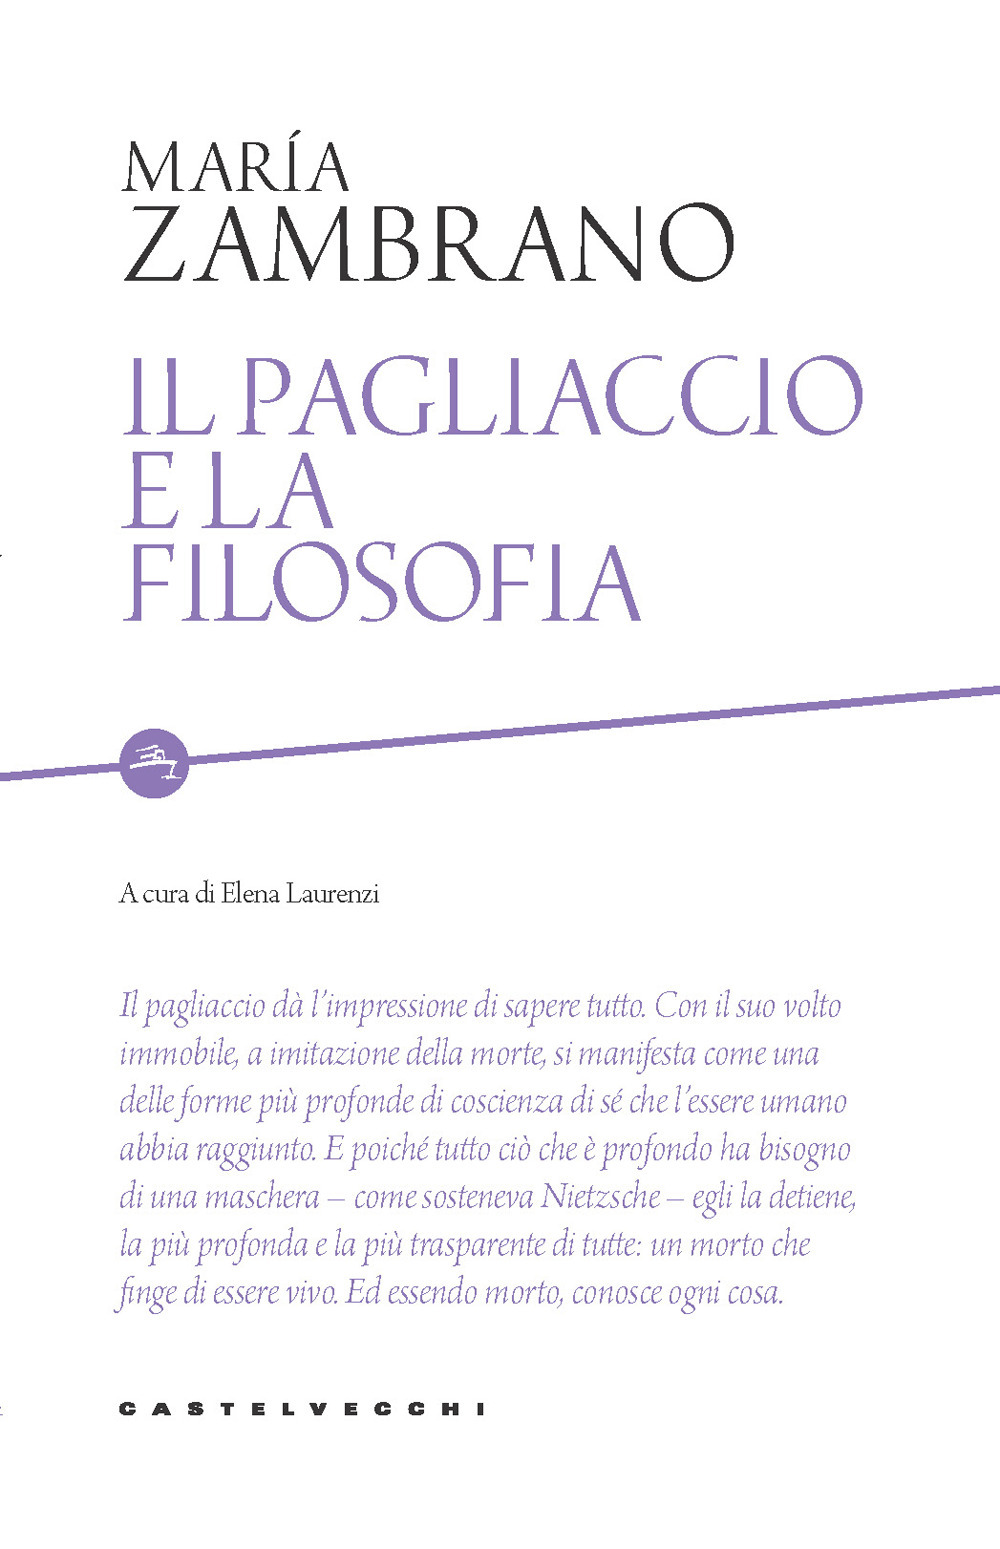 Image of Il pagliaccio e la filosofia